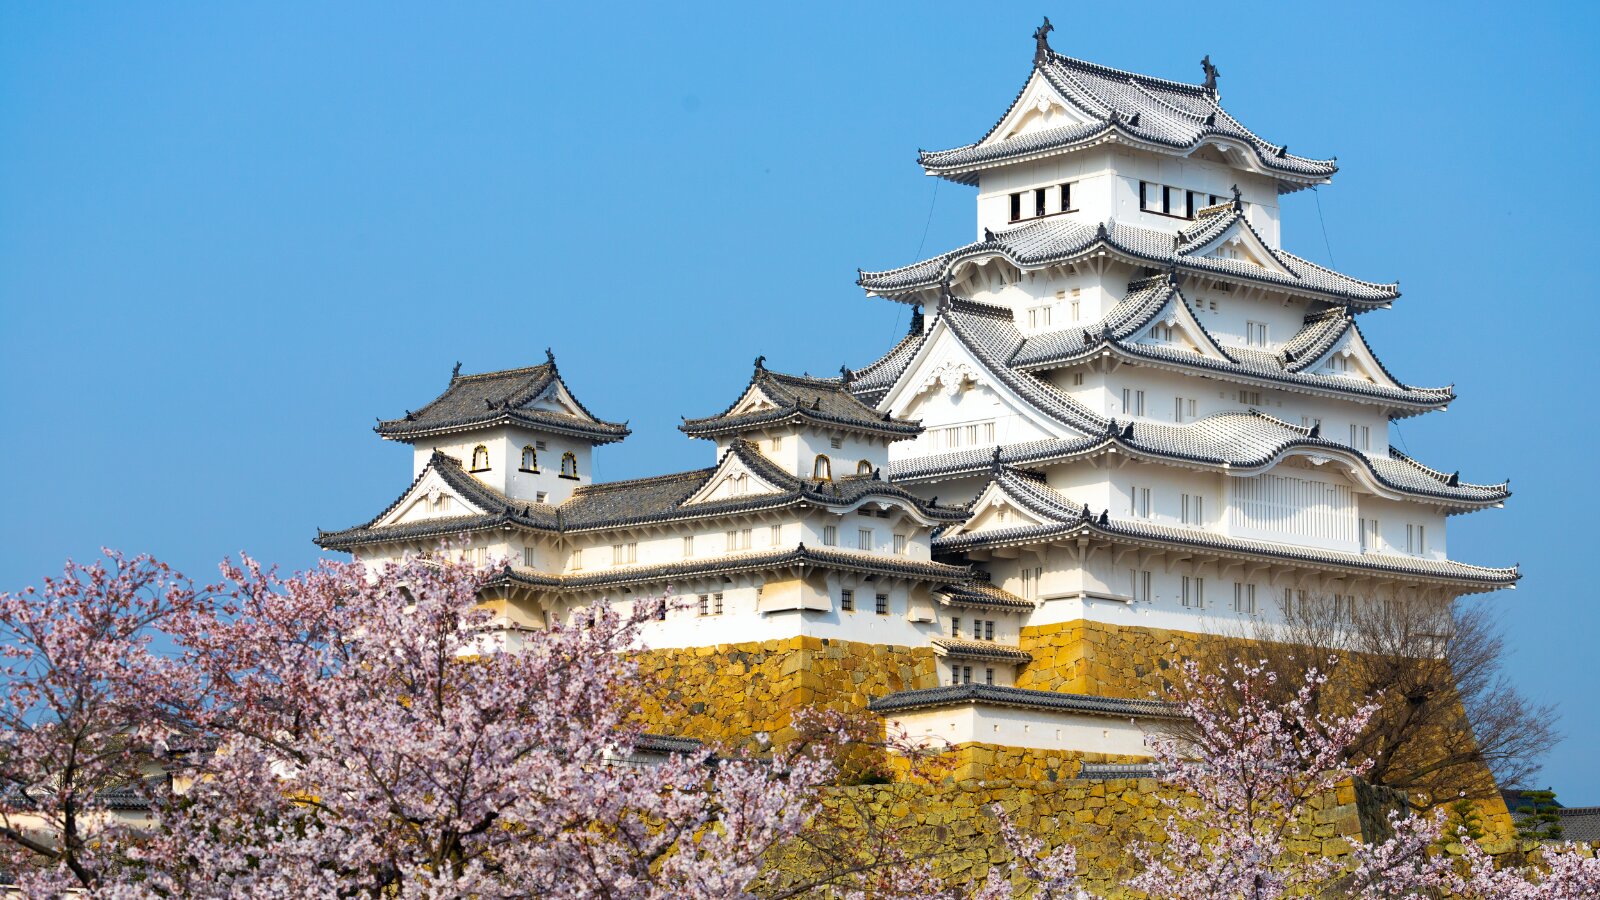 春の姫路城